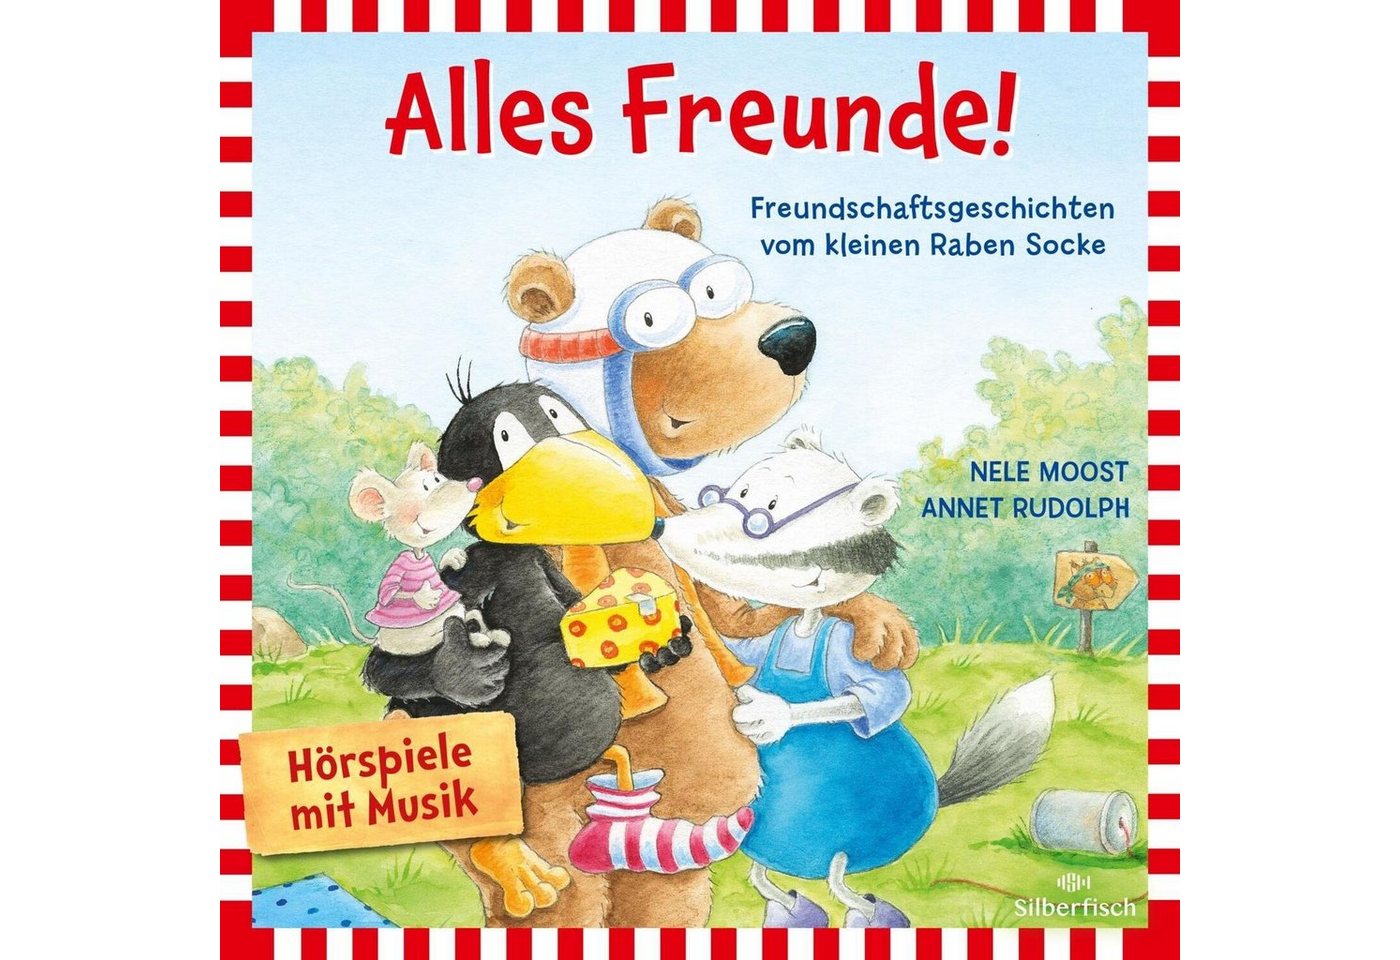 Silberfisch Verlag Hörspiel Alles Freunde! (Der kleine Rabe Socke) von Silberfisch Verlag